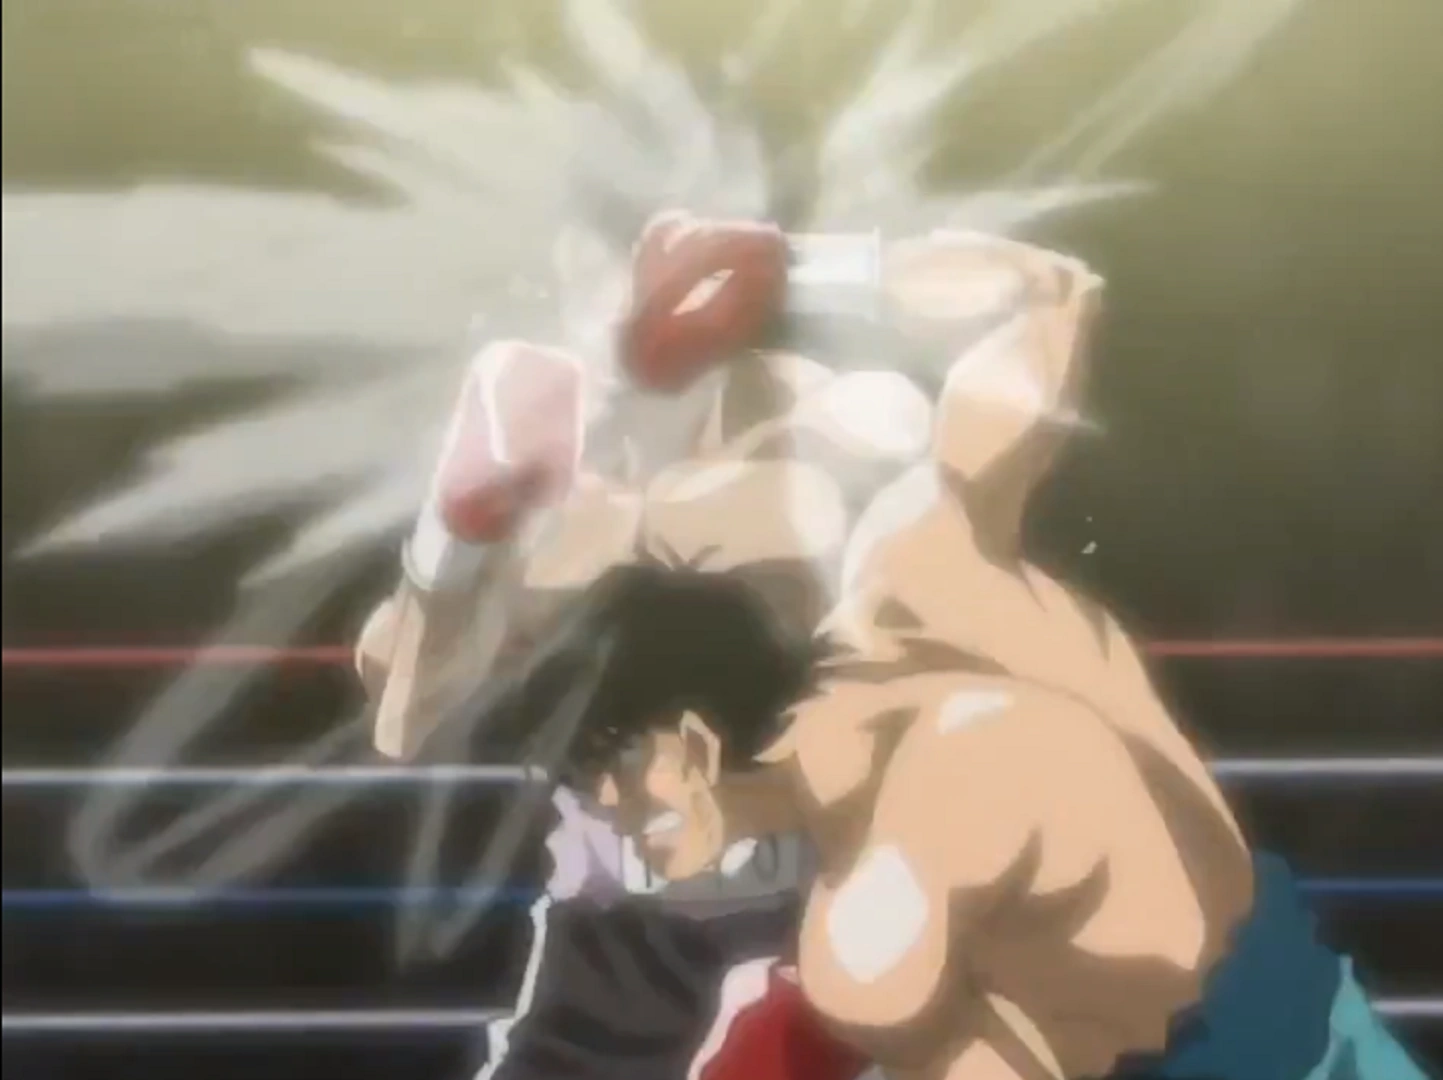 Little Mac (Punch Out!!) vs. Ippo Makunoichi (Hajime no Ippo)